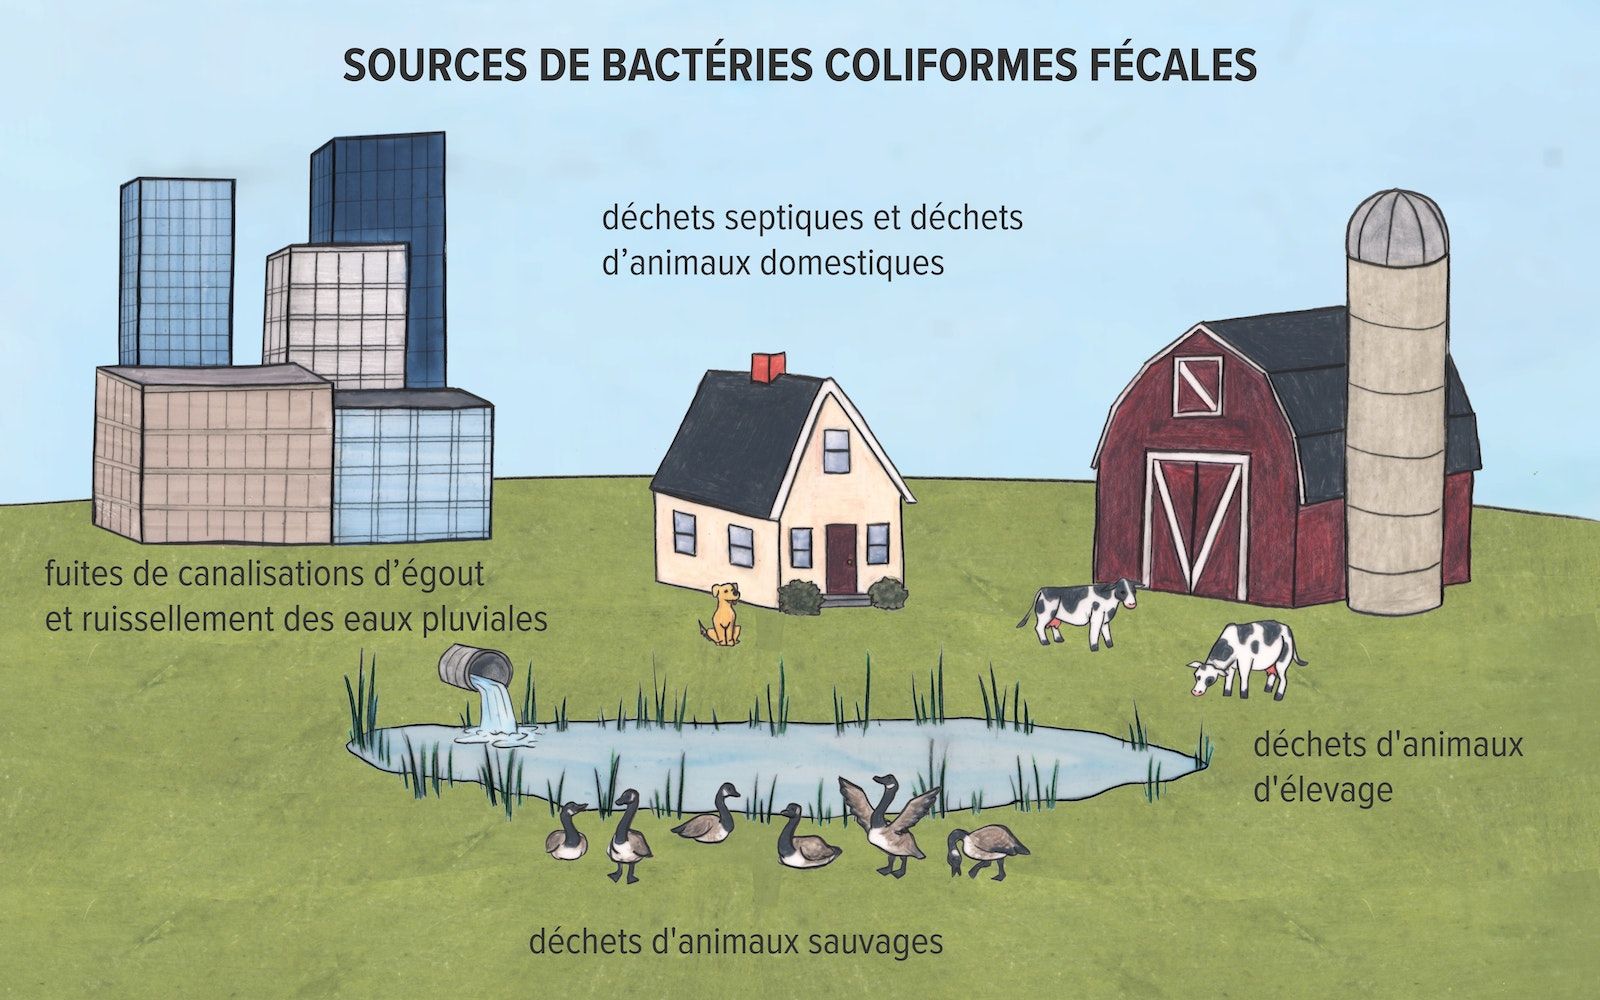 Dessin illustrant différentes sources de bactéries coliformes fécales. De grands bâtiments avec l'étiquette "fuites des conduites d'égout et ruissellement des eaux pluviales", une maison avec l'étiquette "déchets septiques et animaux de compagnie" et une ferme avec deux vaches avec l'étiquette "déchets d'animaux de ferme" sont affichés en arrière-plan. Un étang avec des canards est représenté au premier plan, avec l'étiquette "déchets fauniques".